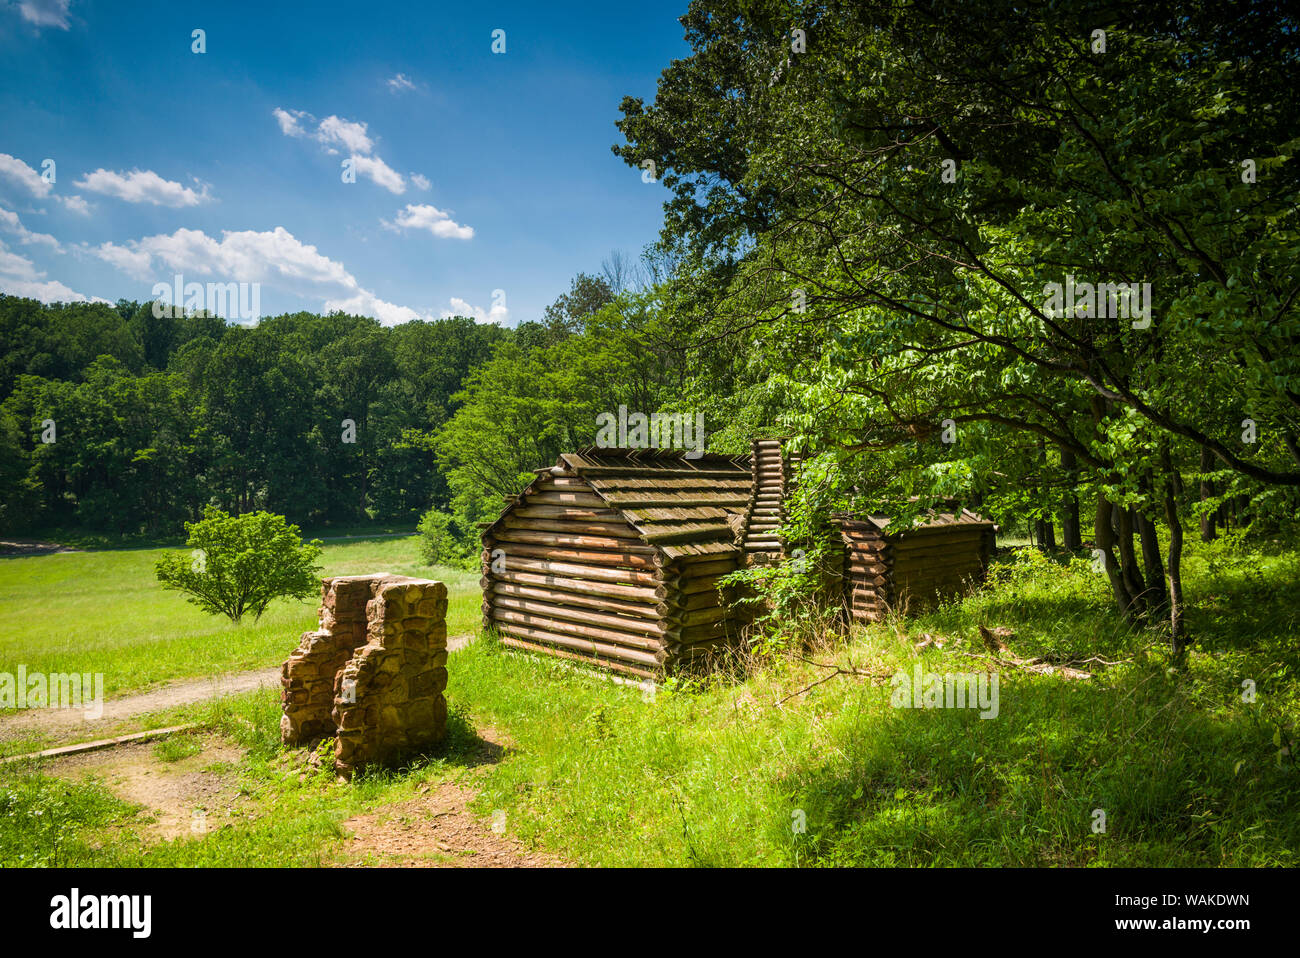 USA, New Jersey, Morristown. Jockey Hohl, winter Camp und Kabinen Website von amerikanischen Soldaten während des Amerikanischen Unabhängigkeitskrieges verwendet Stockfoto